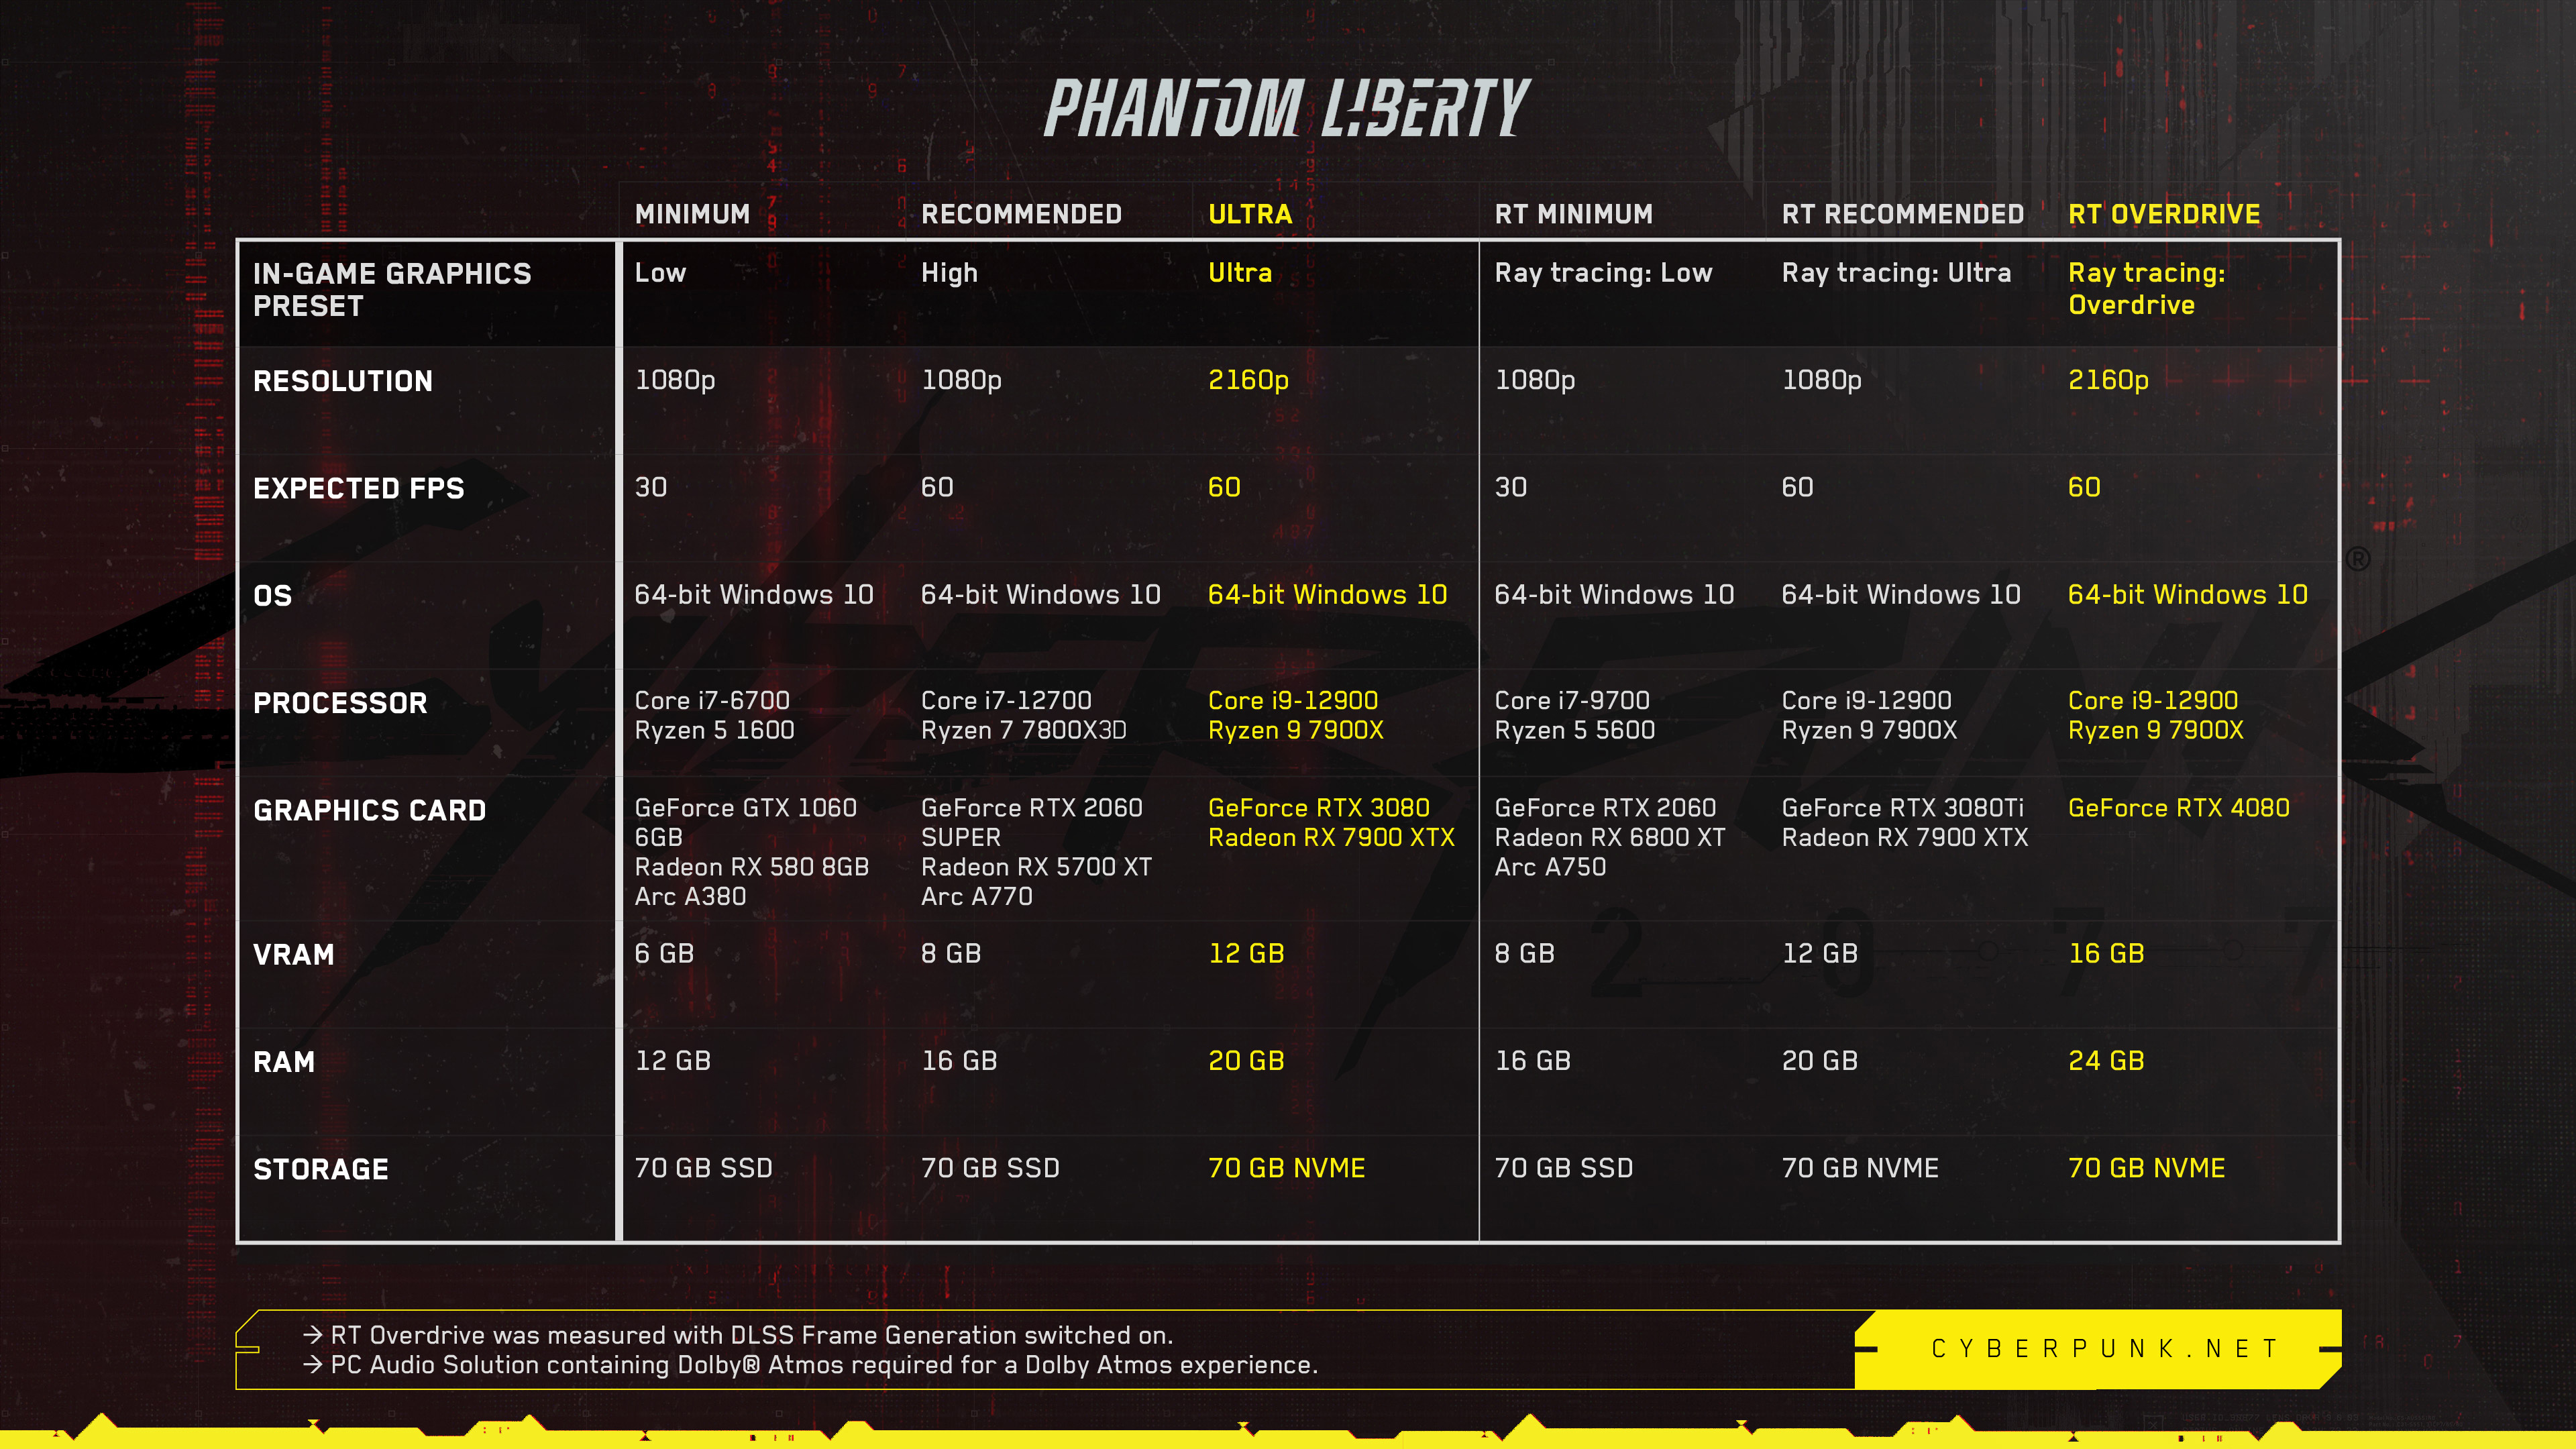 Cyberpunk 2077: requisitos del sistema para el contenido descargable Phantom Liberty